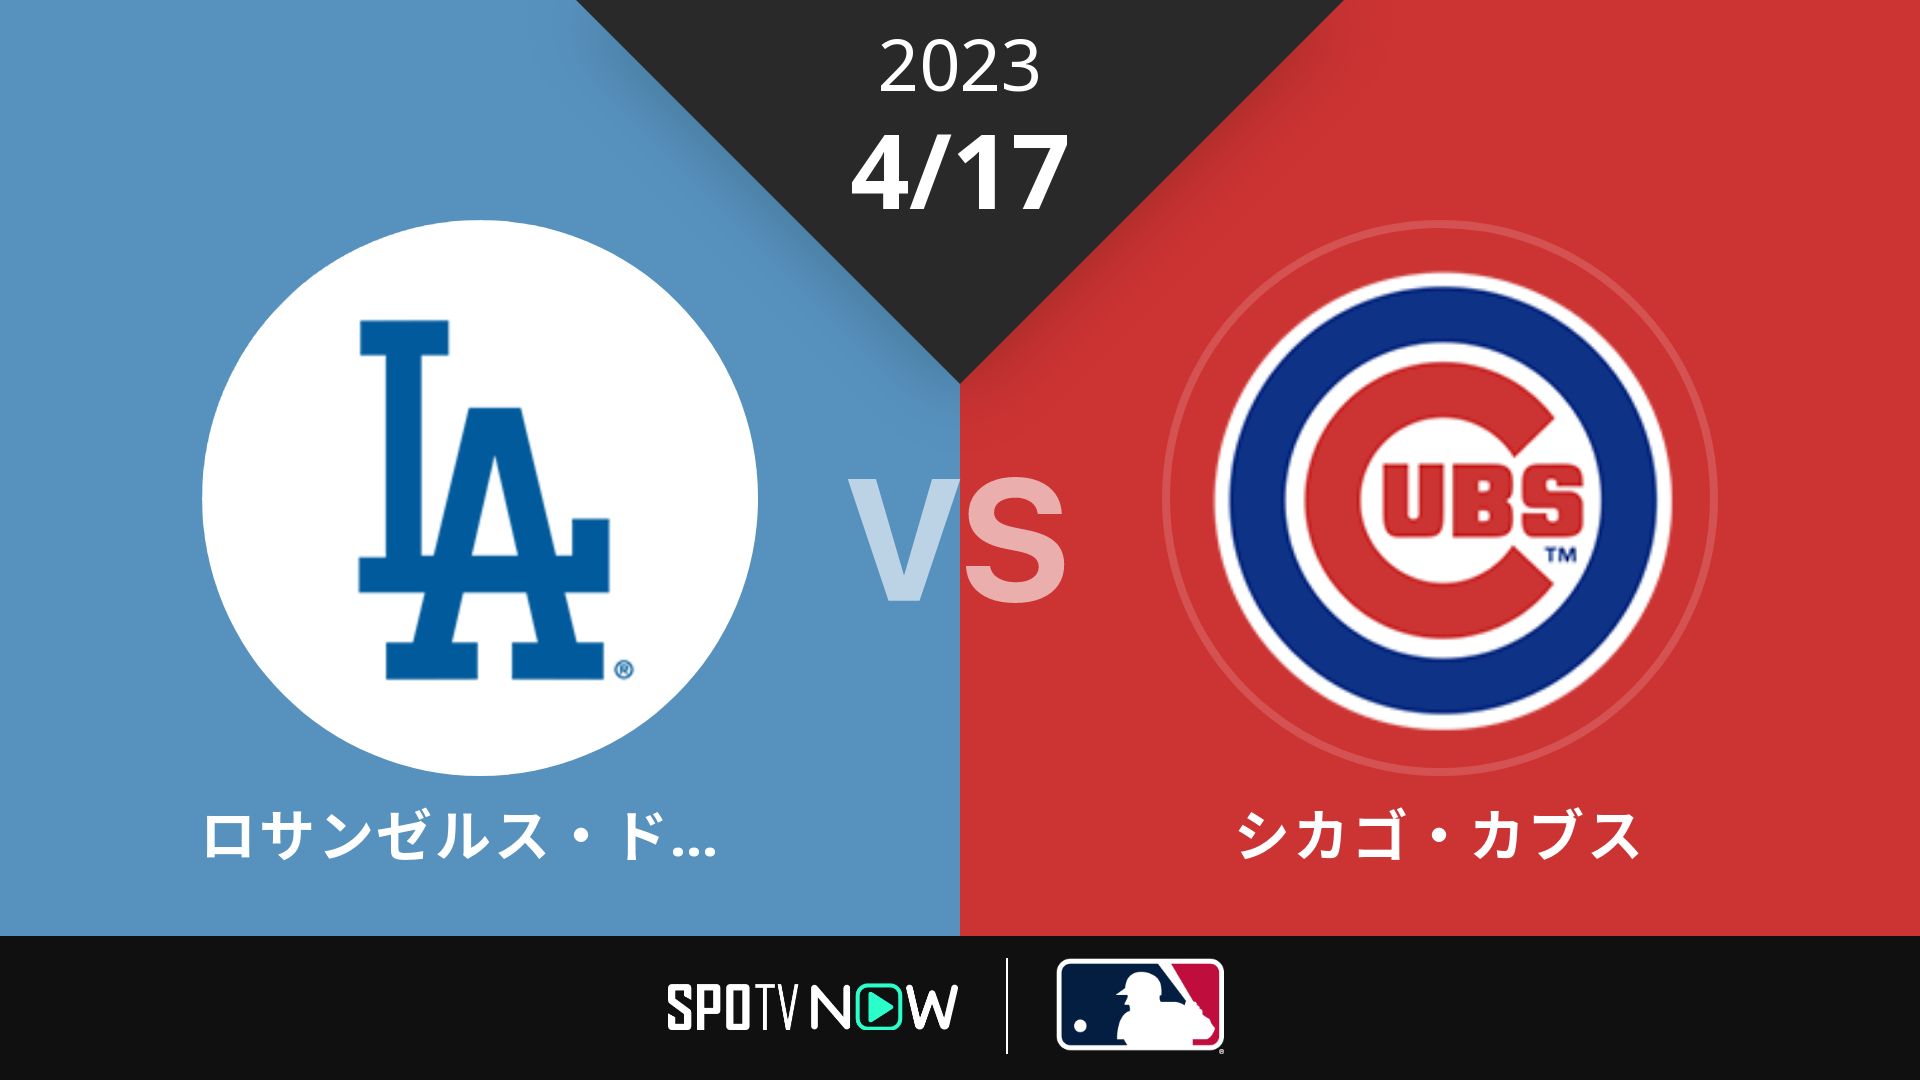 2023/4/17 ドジャース vs カブス [MLB]